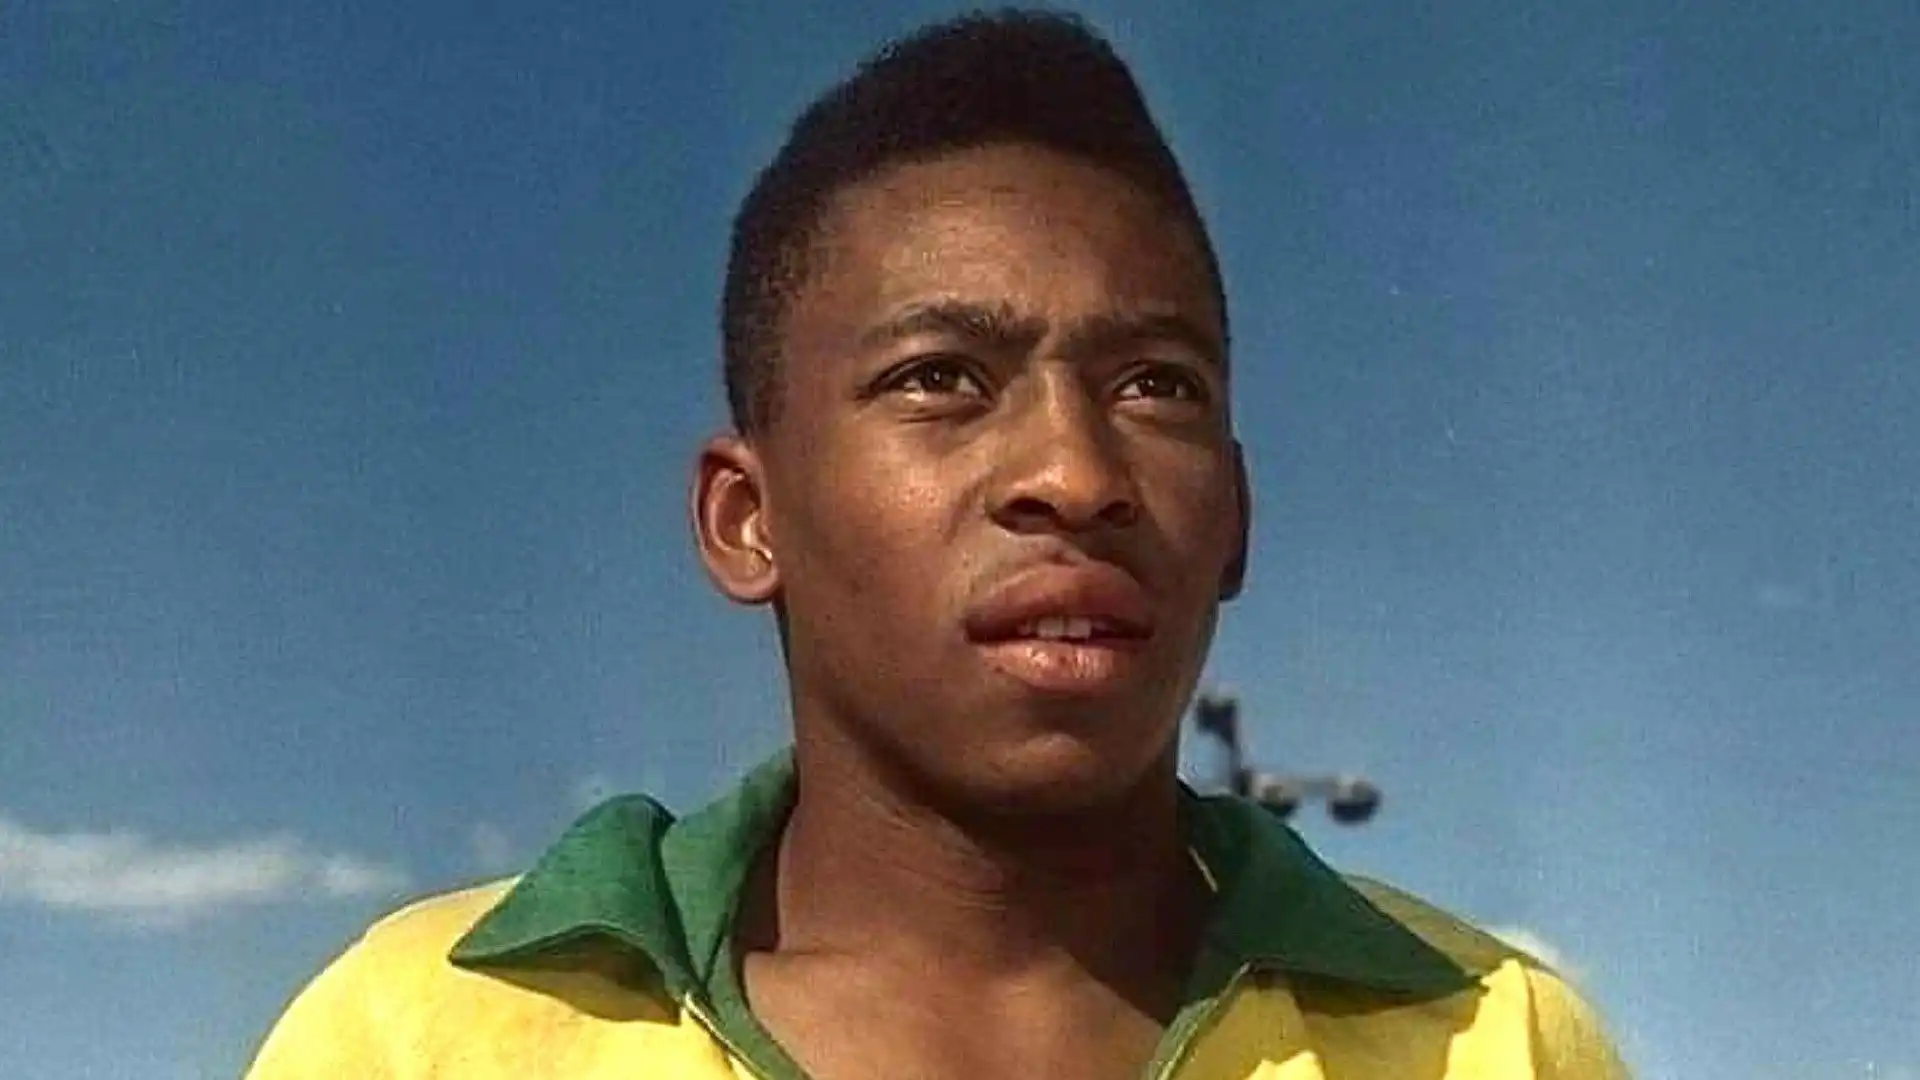 1- Prima posizione per Pelé, una leggenda del calcio e probabilmente il calciatore più forte di tutti i tempi